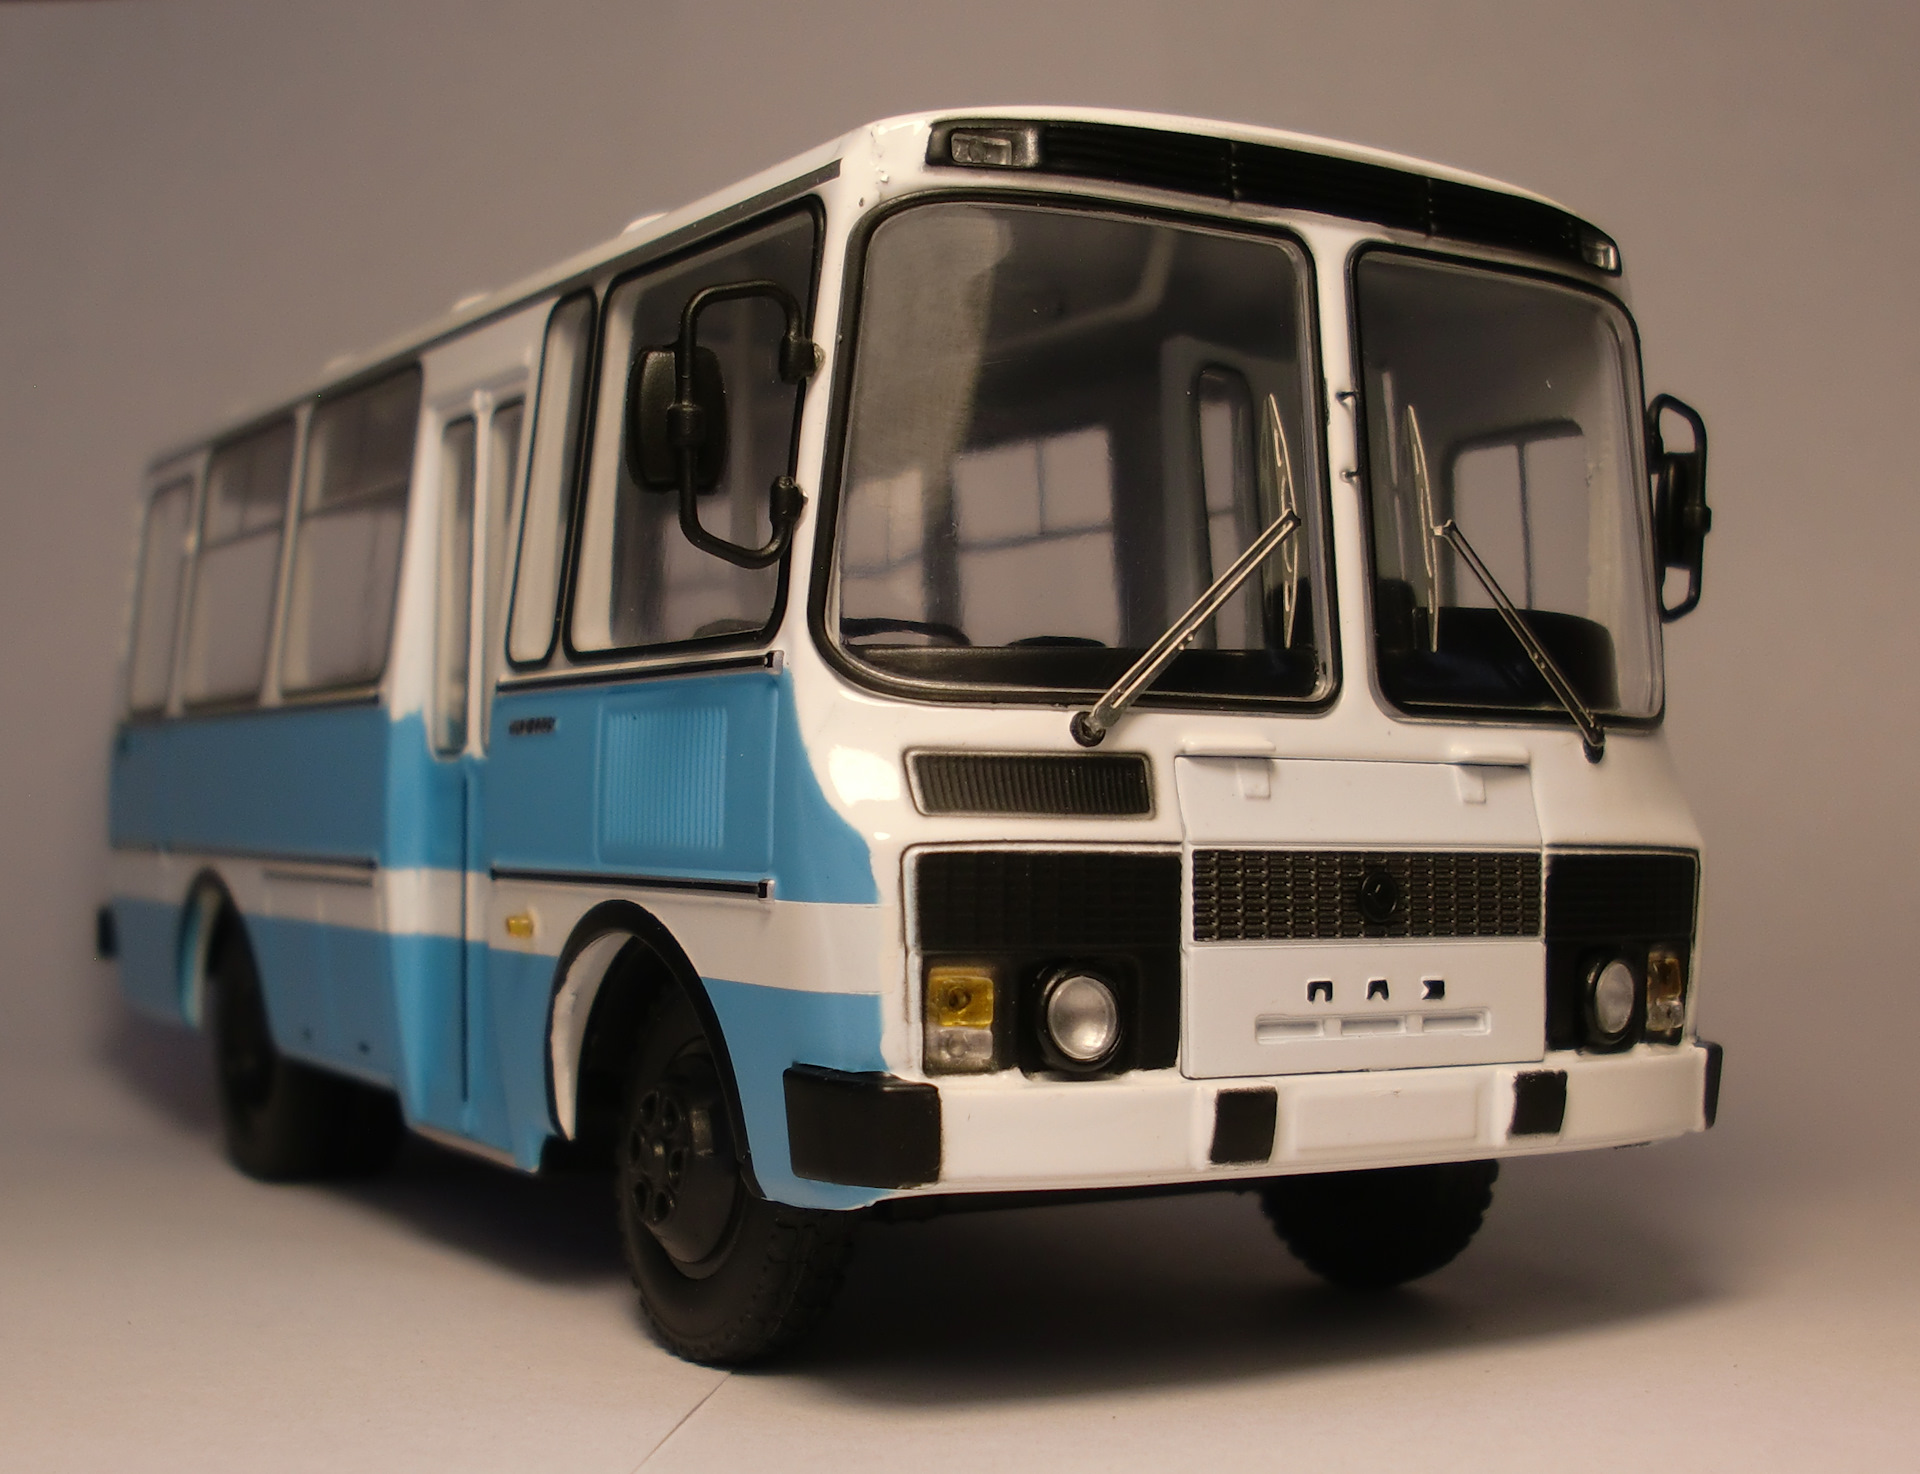 Колеса паз 3205. ПАЗ-3205 автобус. ПАЗ 3205 Советский. ПАЗ 3205 AVD. ПАЗ 3205 1989.